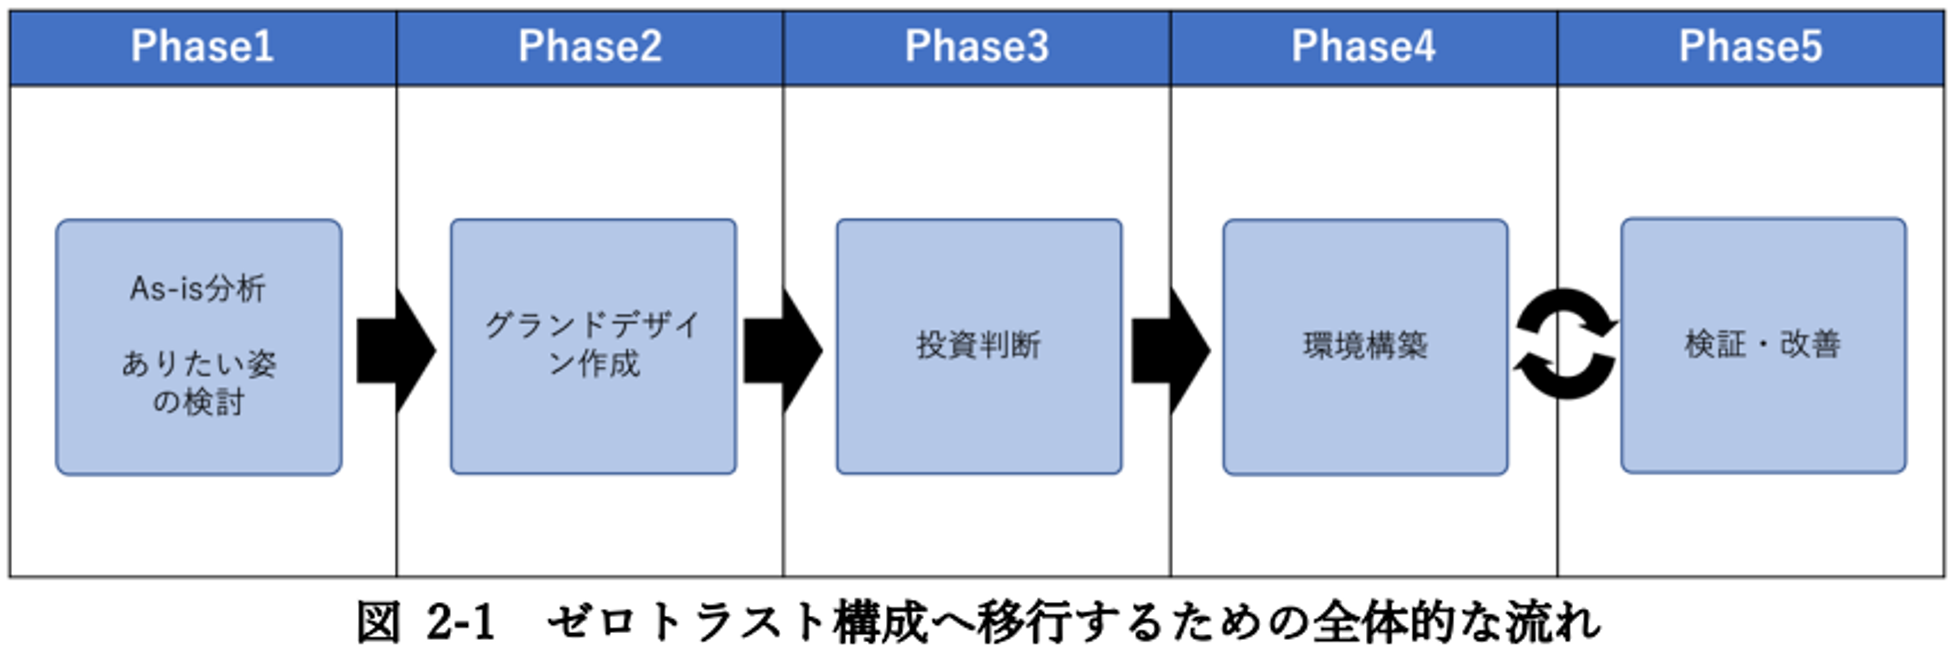 [図 2-1 ゼロトラスト構成へ移行するための全体的な流れ] Phase1：As-is分析 ありたい姿の検討、Phase2：グランドデザイン作成、Phase3：投資判断、Phase4：環境構築、Phase5：検証・改善